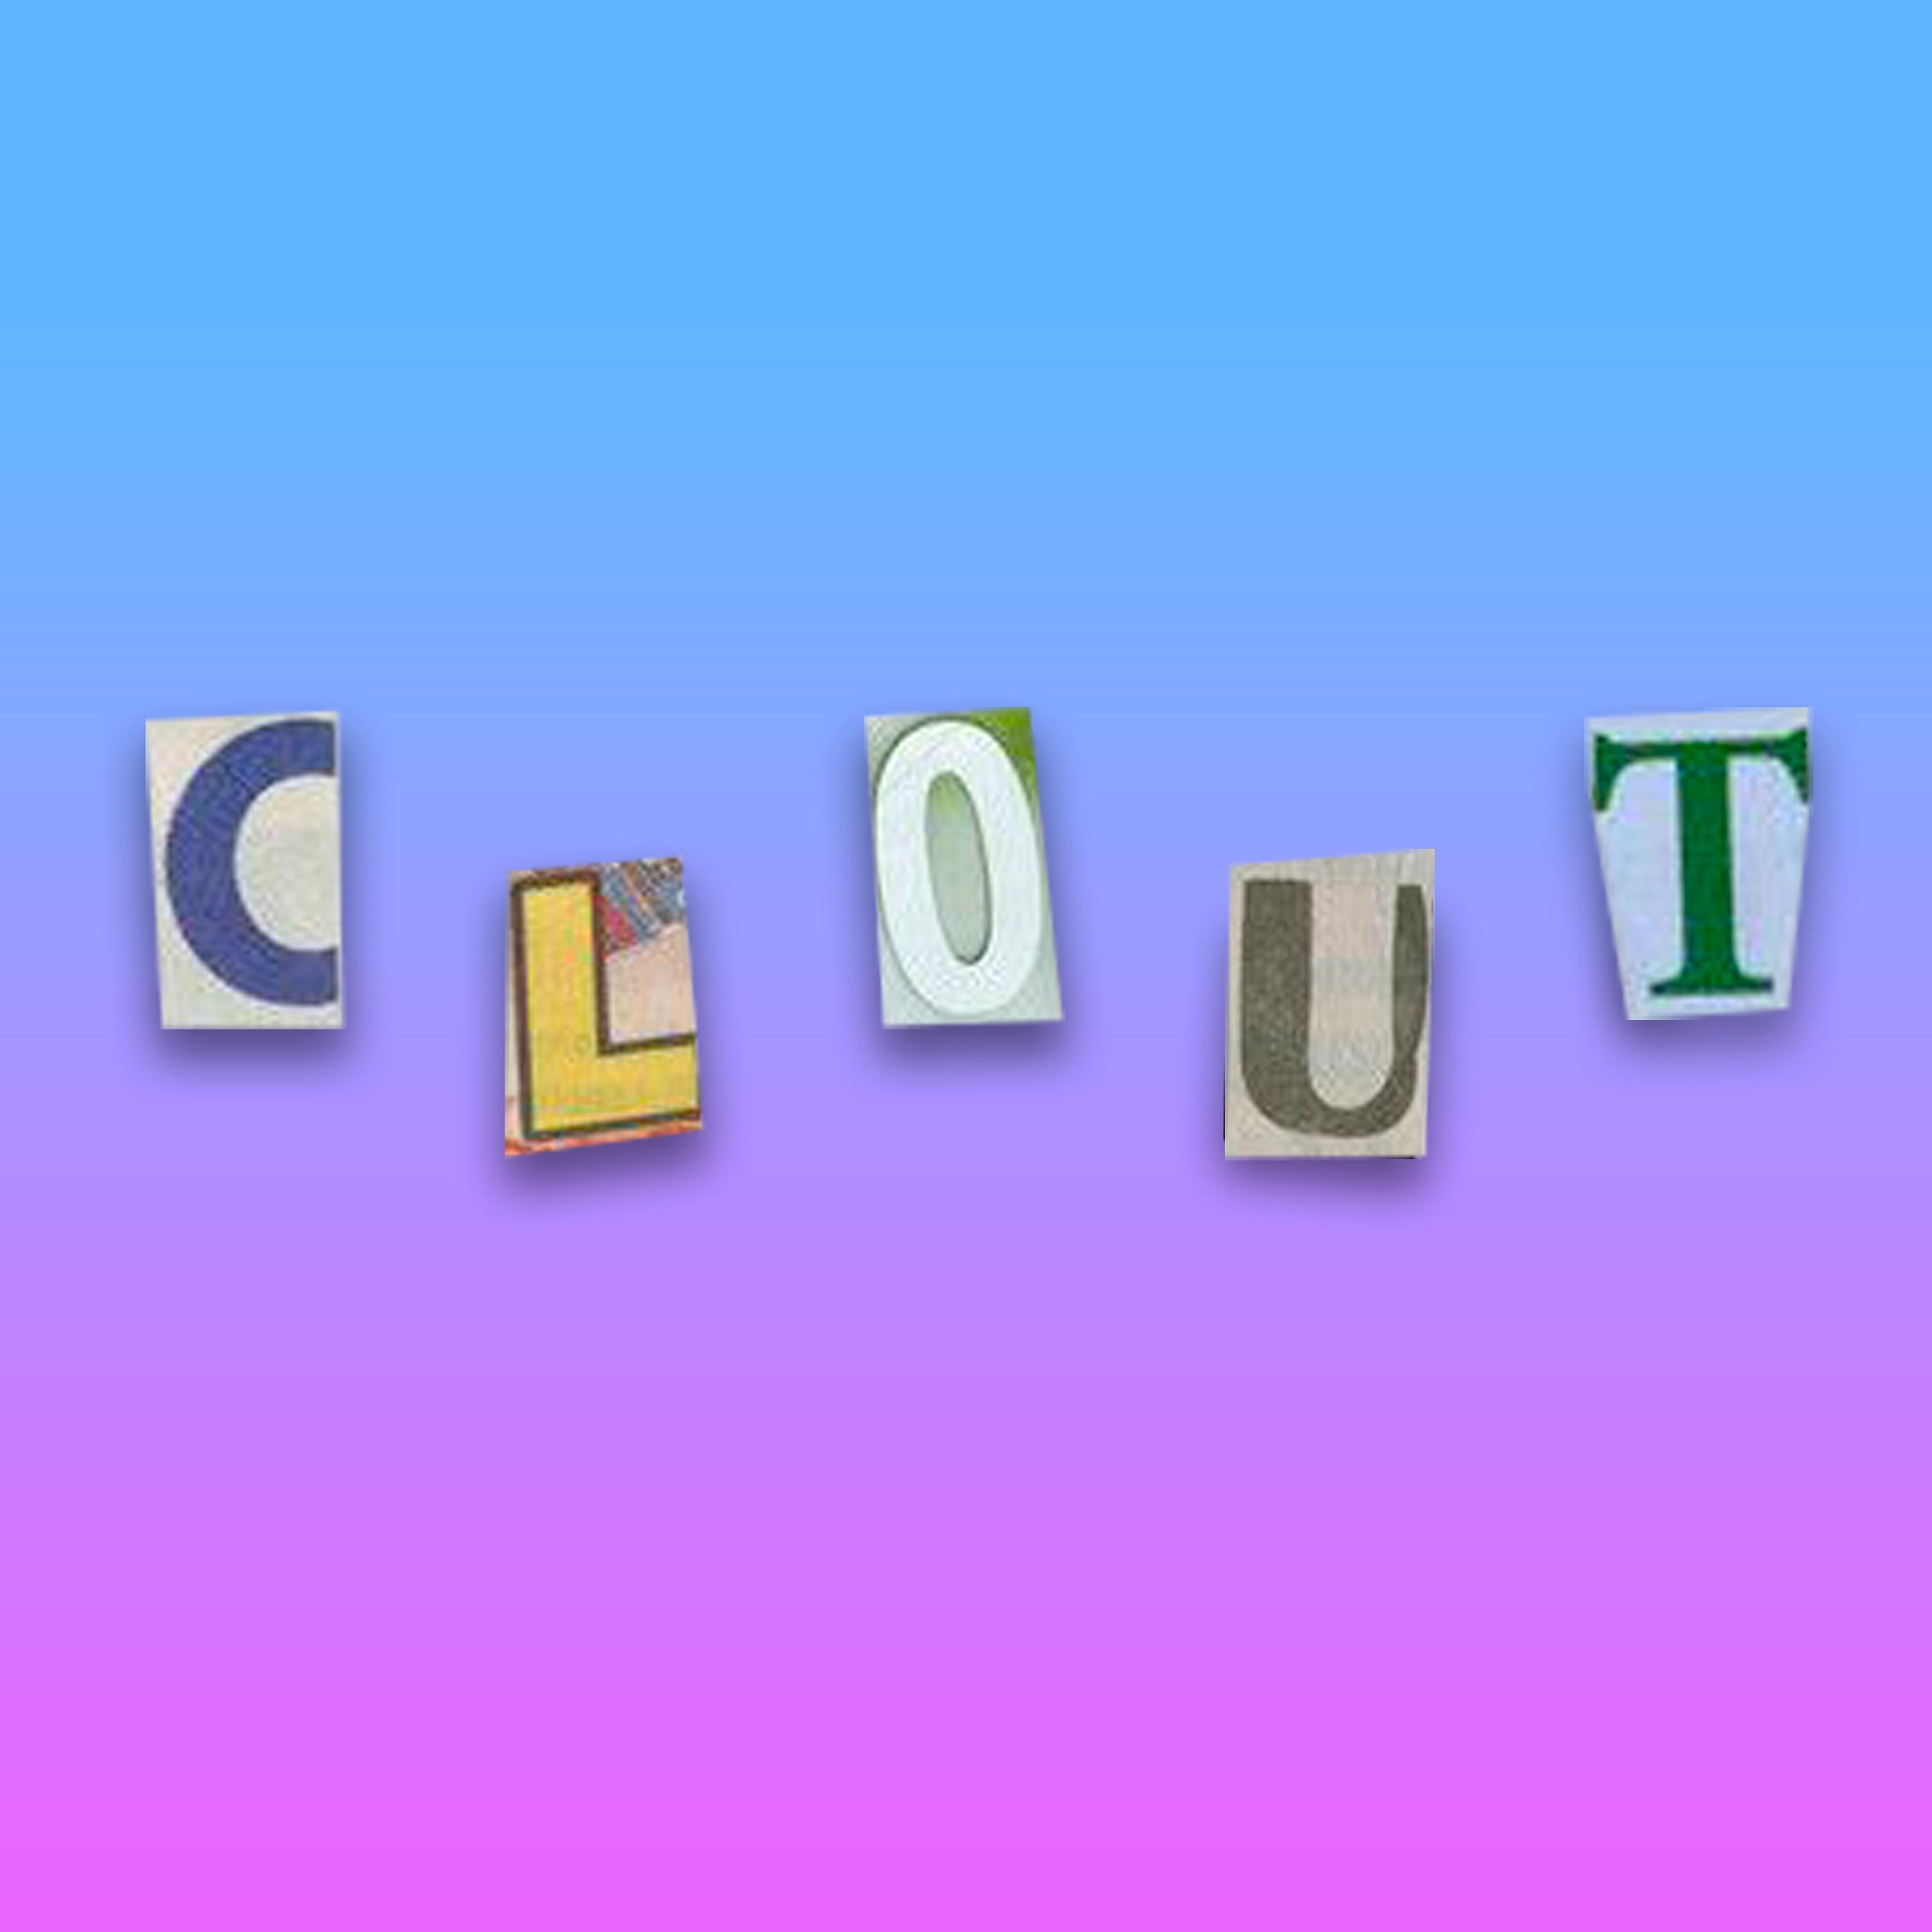 Постер альбома Clout